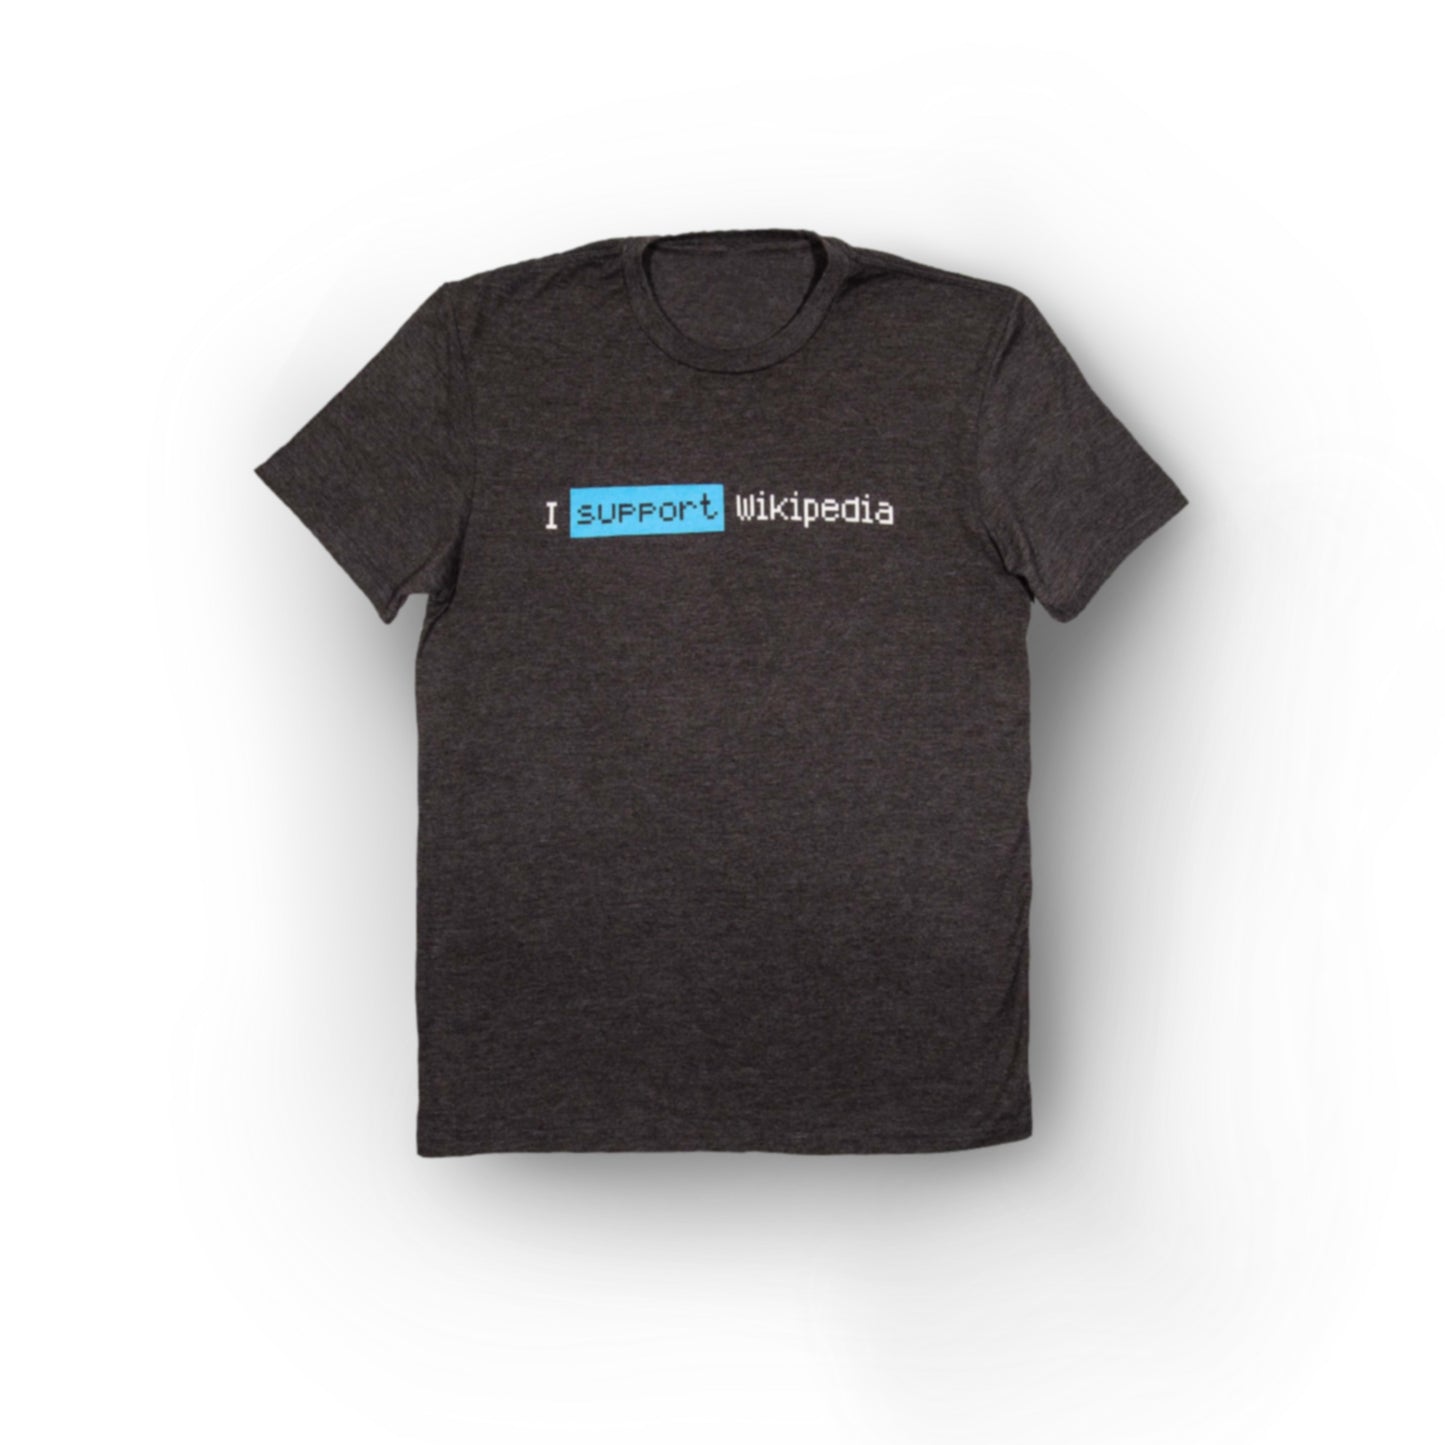 Camiseta "I support Wikipedia" Unisex